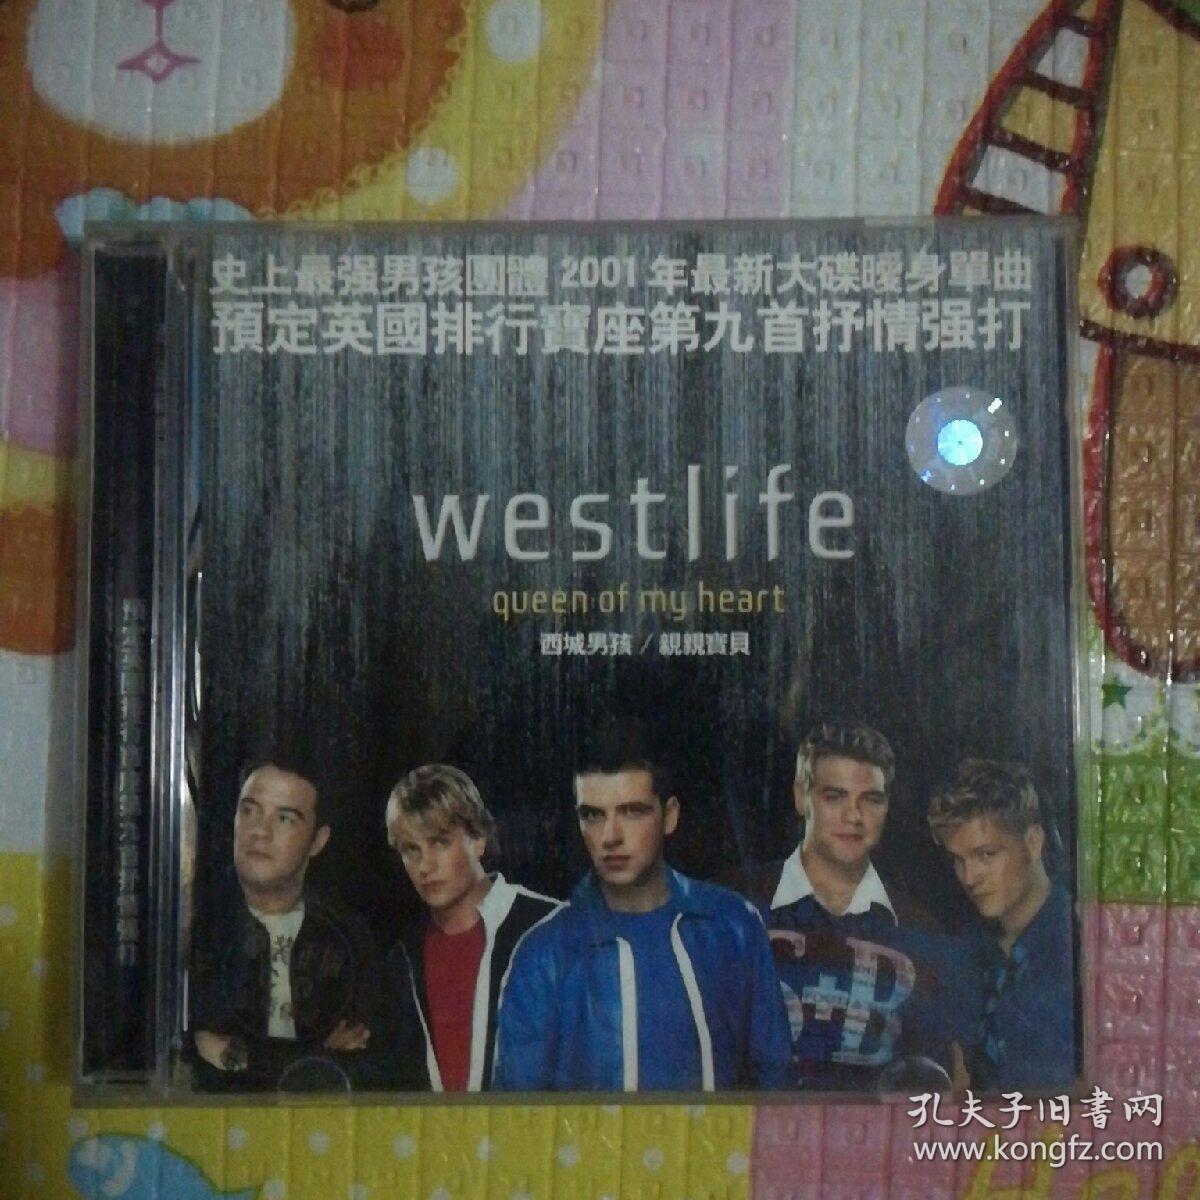 westlife(西城男孩,亲亲宝贝)-史上最强男孩团体